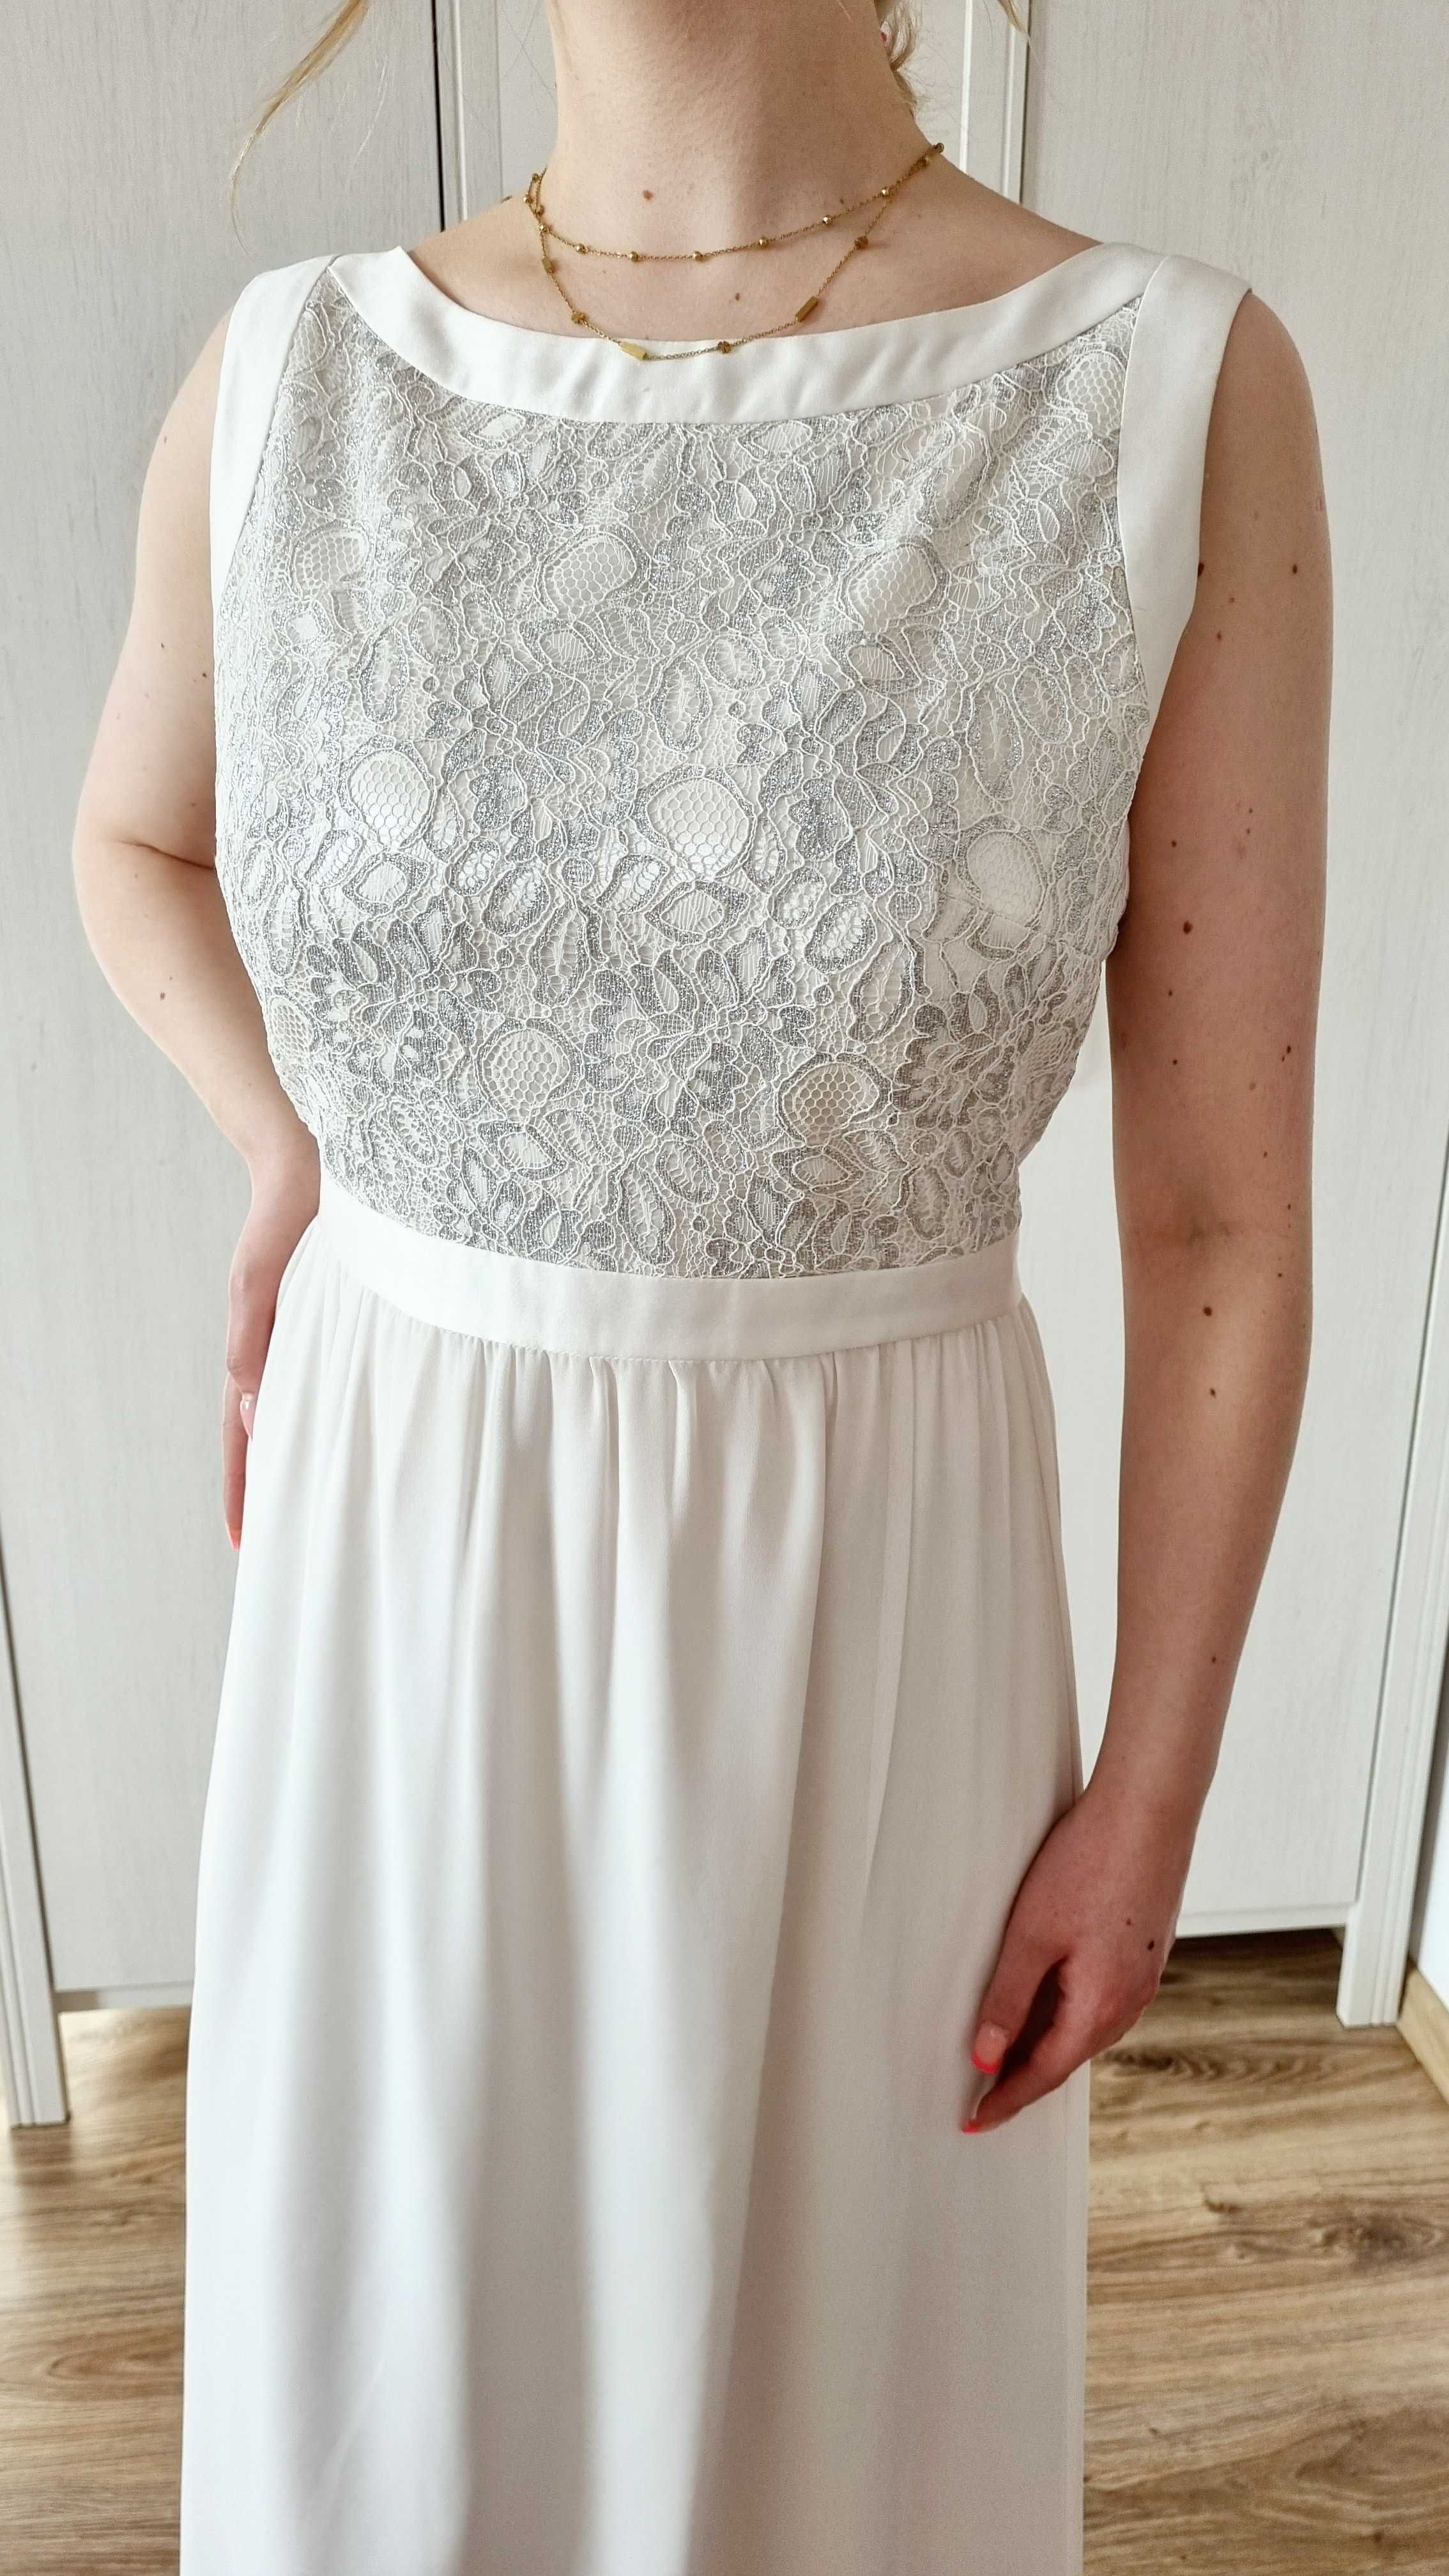 biała suknia ślubna, srebrna góra, prosta boho XL 42 Swing